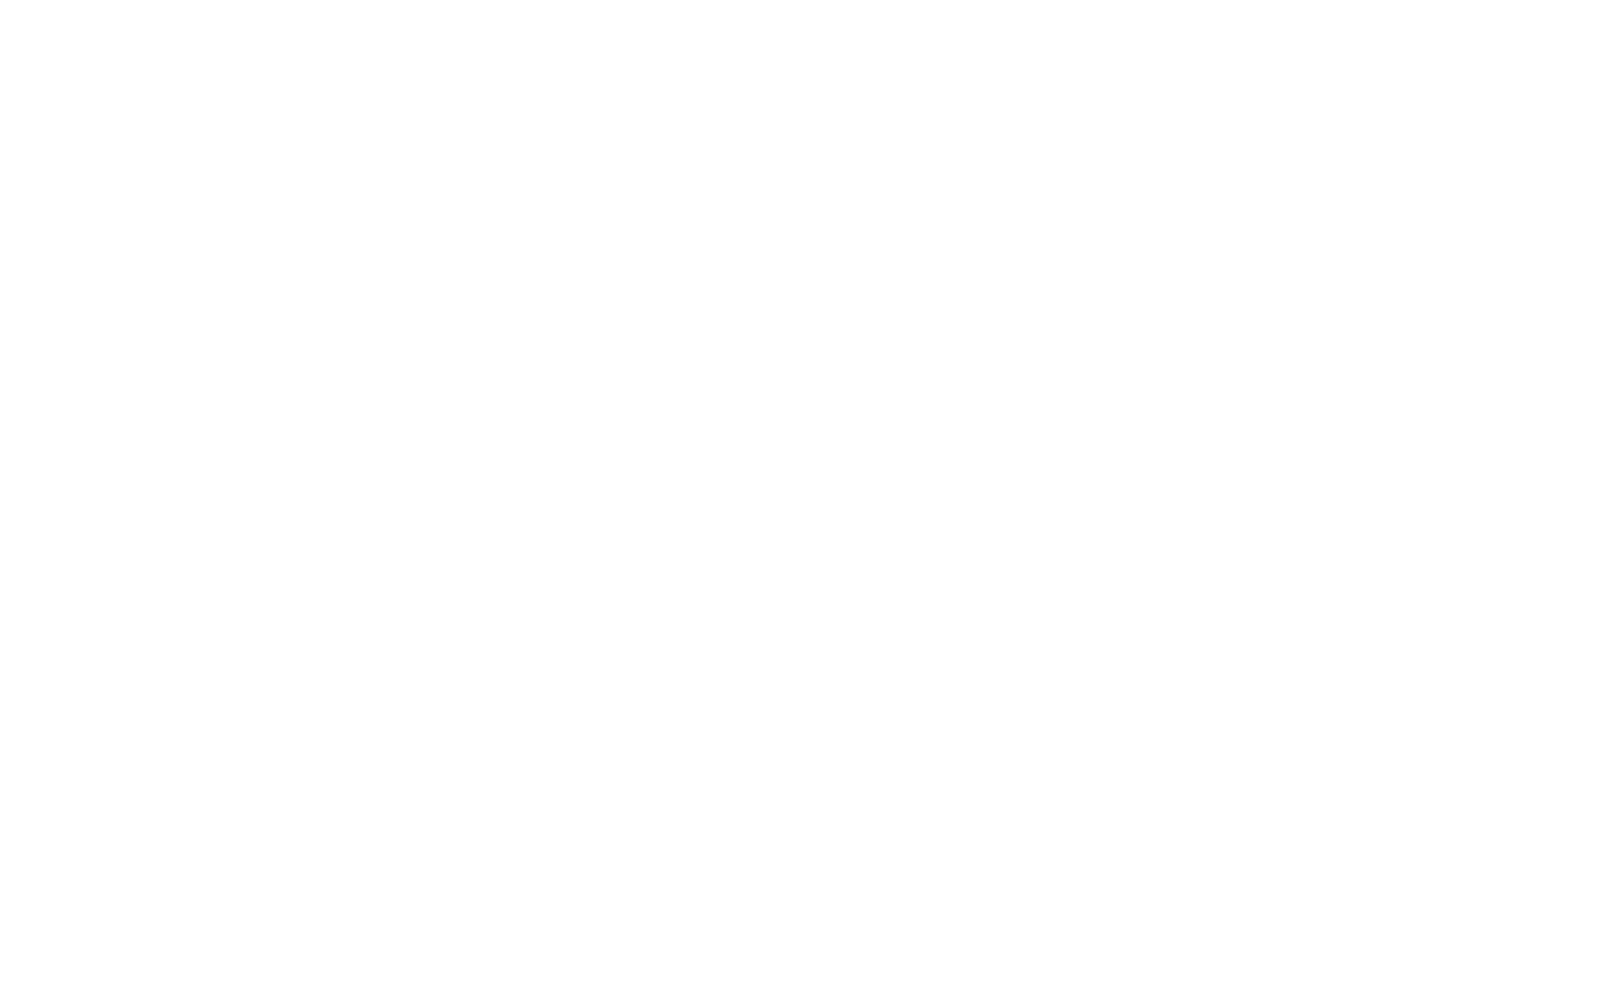 Dr Grant Cox